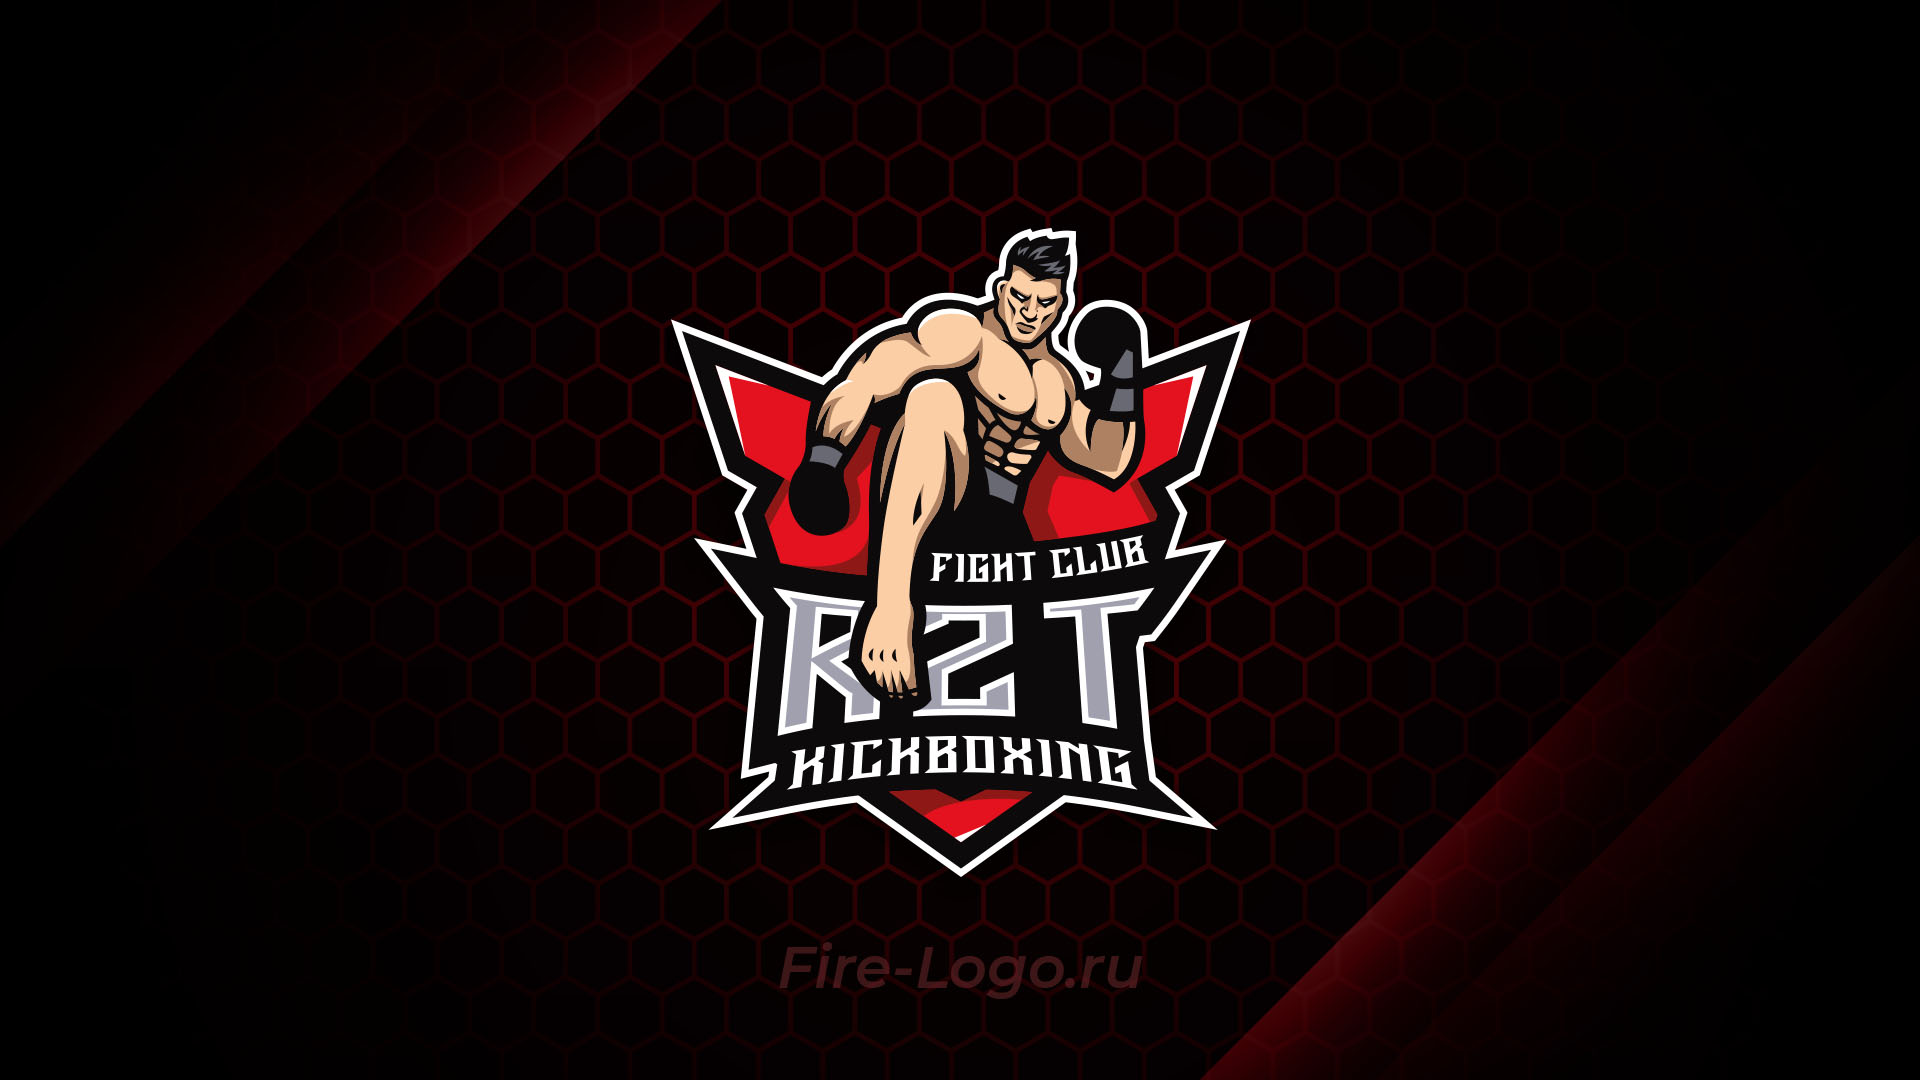 Логотип кикбоксинг клуба RZT